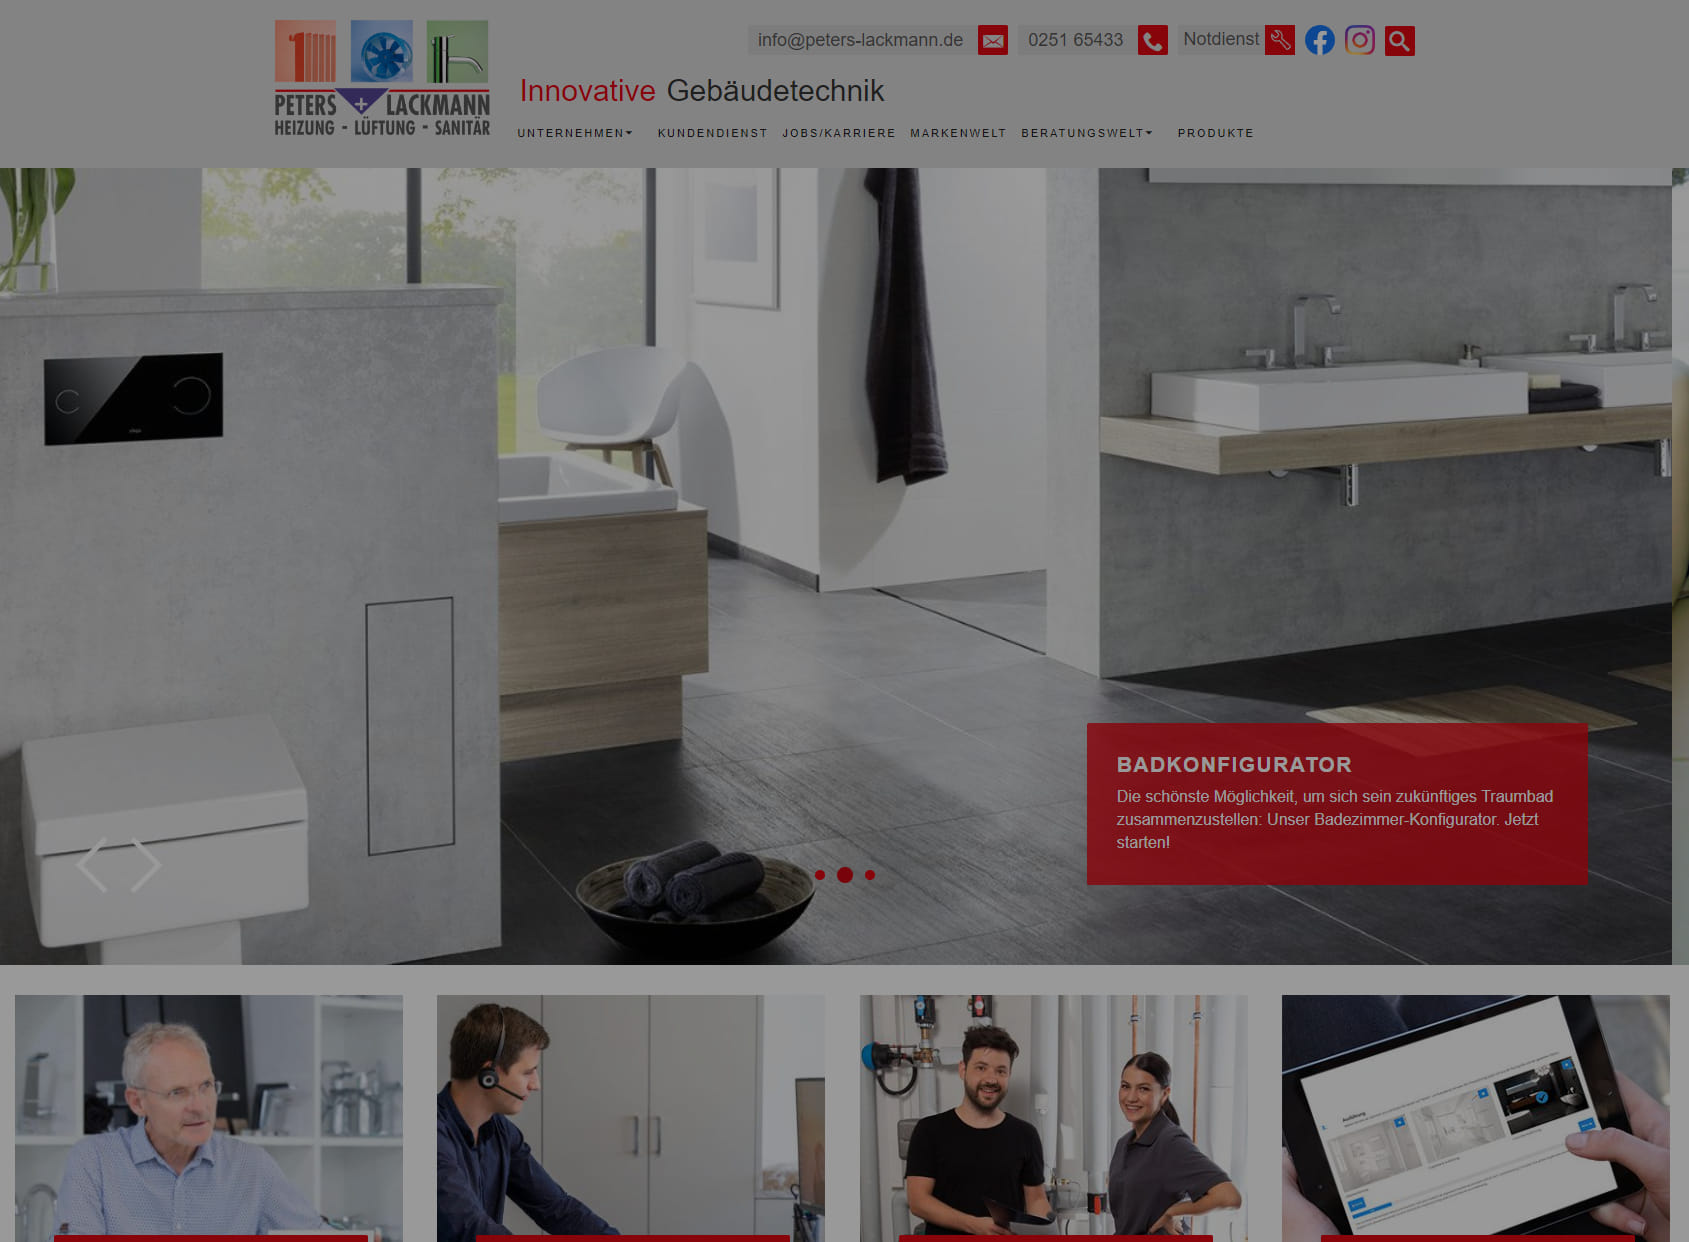 Peters + Lackmann GmbH – Heizung, Lüftung, Sanitär